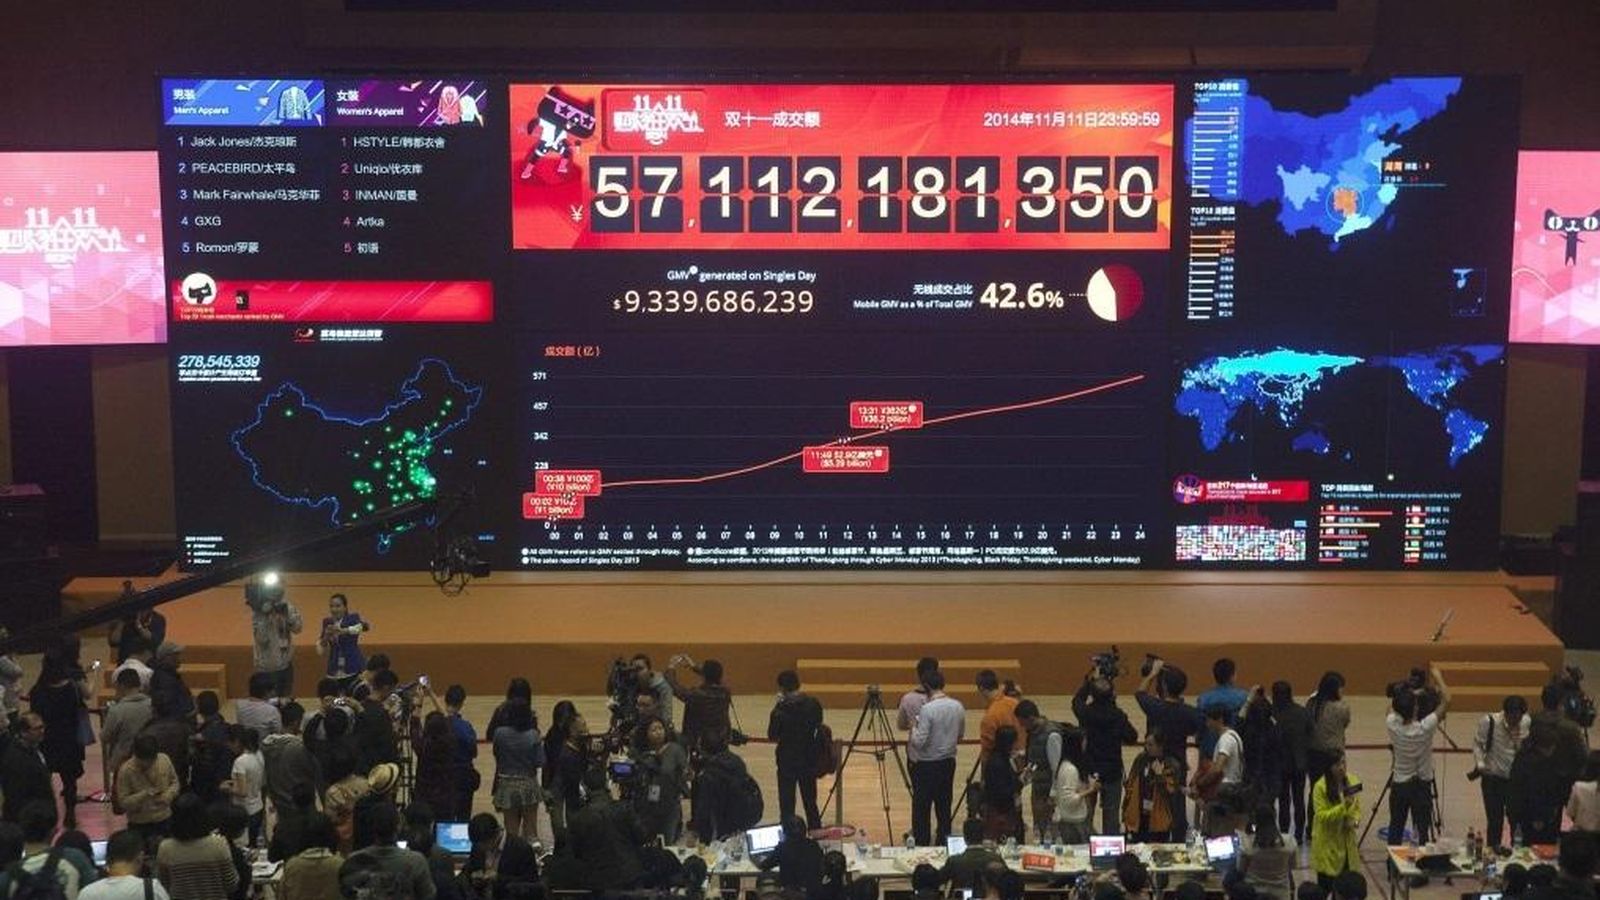 Foto: Vista del tablero electrónico que marca las ventas del portal Alibaba durante el 'Día del Soltero' en la sede de la compañía en Hangzhou en China el año pasado. (EFE)